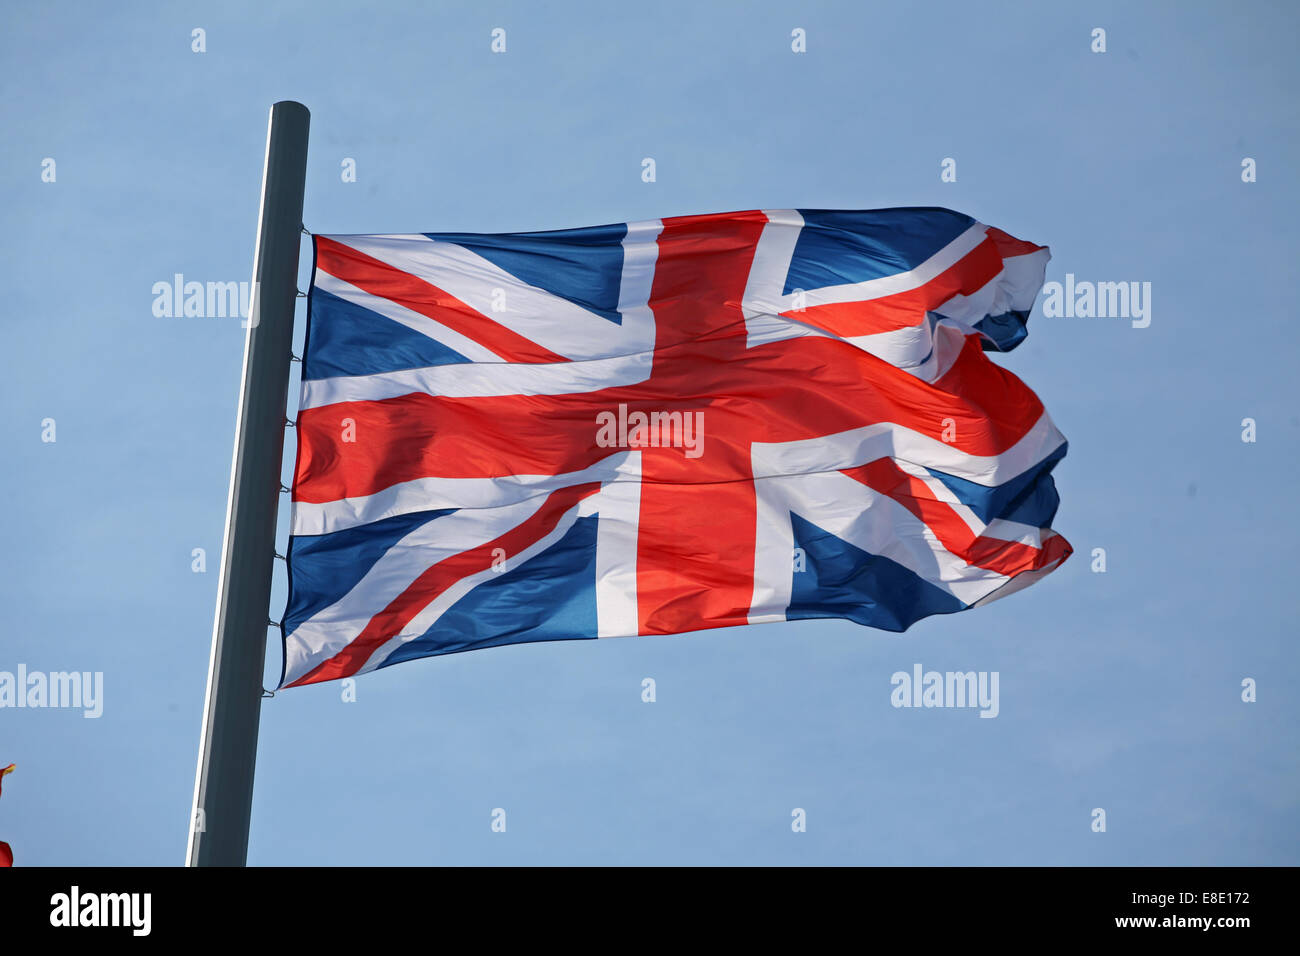 The Union Jack, Union Flag, National flag of the United Kingdom Stock Photo